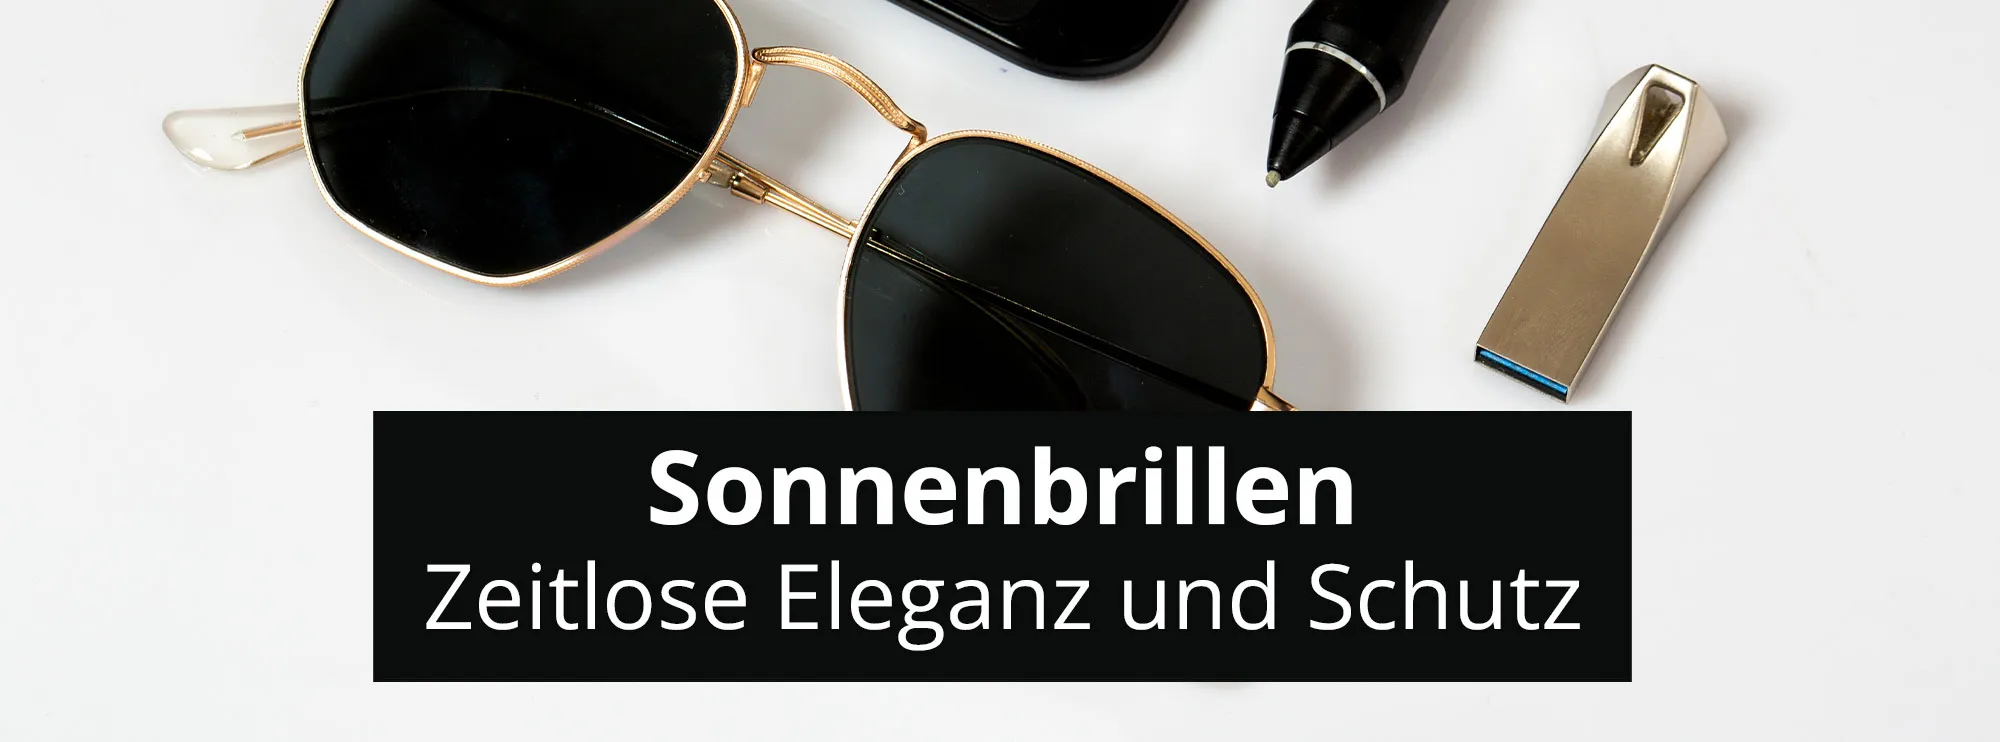 Sonnenbrillen header rosier online shop